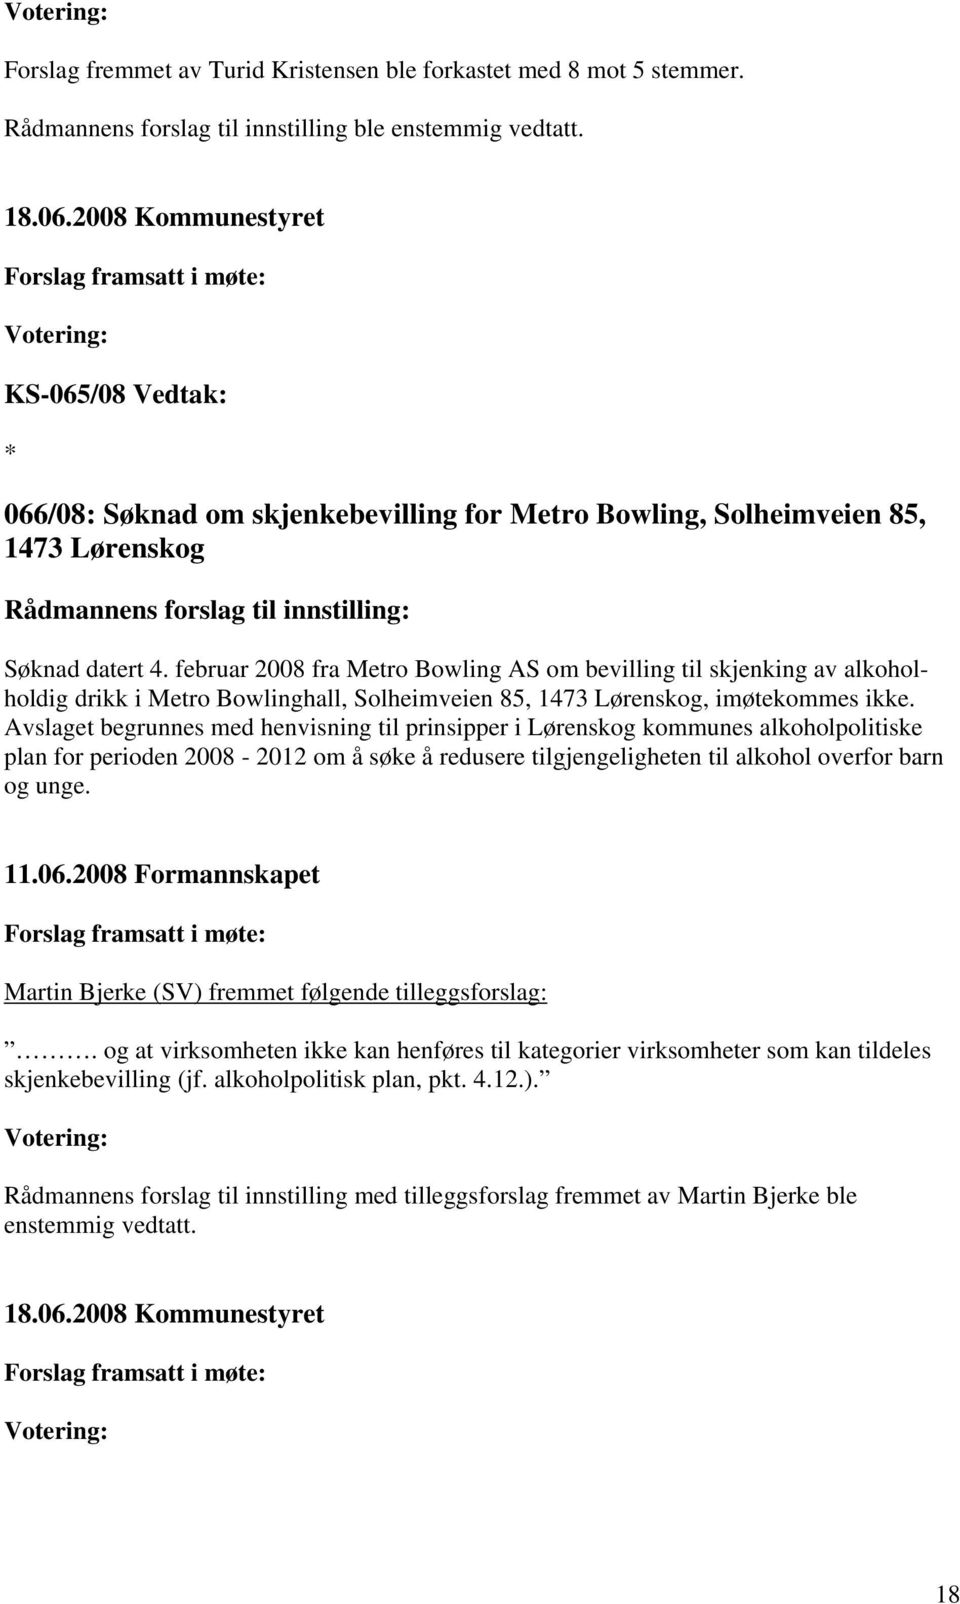 februar 2008 fra Metro Bowling AS om bevilling til skjenking av alkoholholdig drikk i Metro Bowlinghall, Solheimveien 85, 1473 Lørenskog, imøtekommes ikke.